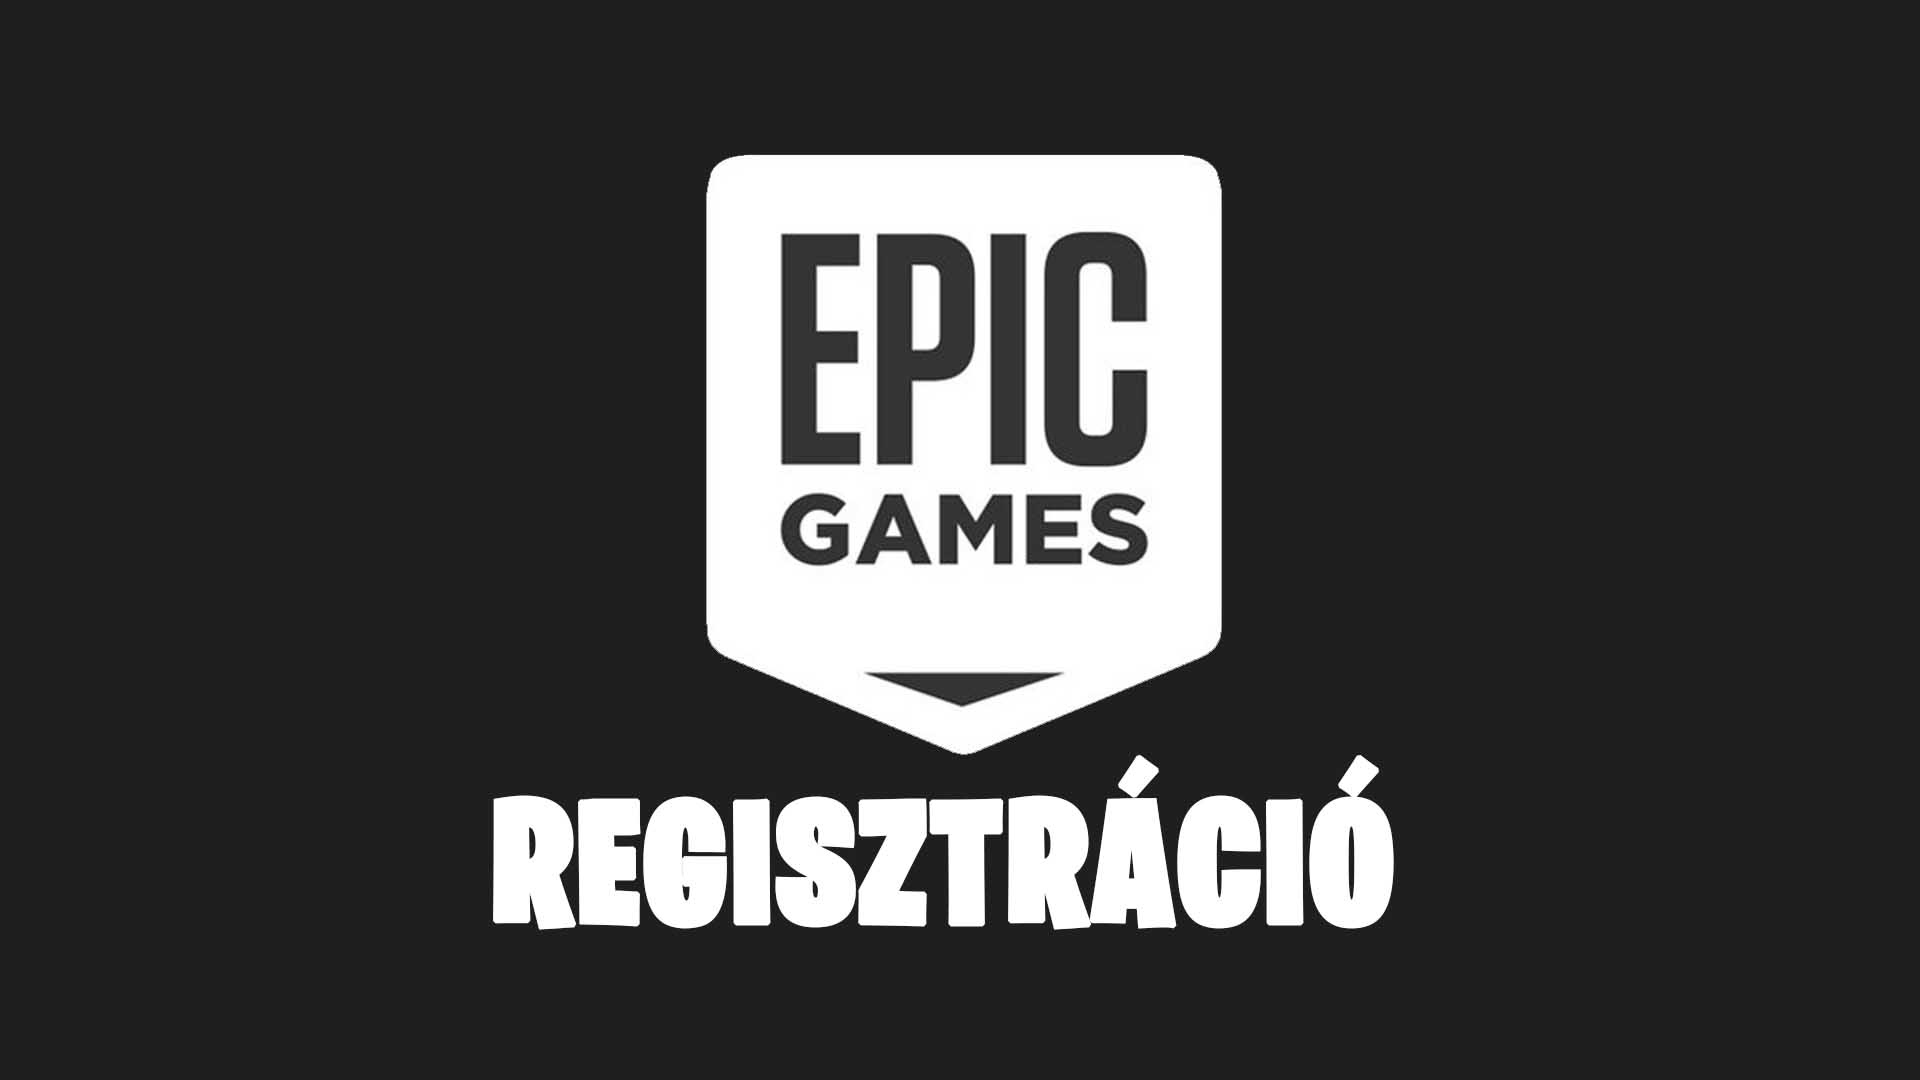 Epic Games regisztráció lépései magyarul [Epic Games magyar nyelvű regisztrációs útmutató] nyitóképe, borítóképe